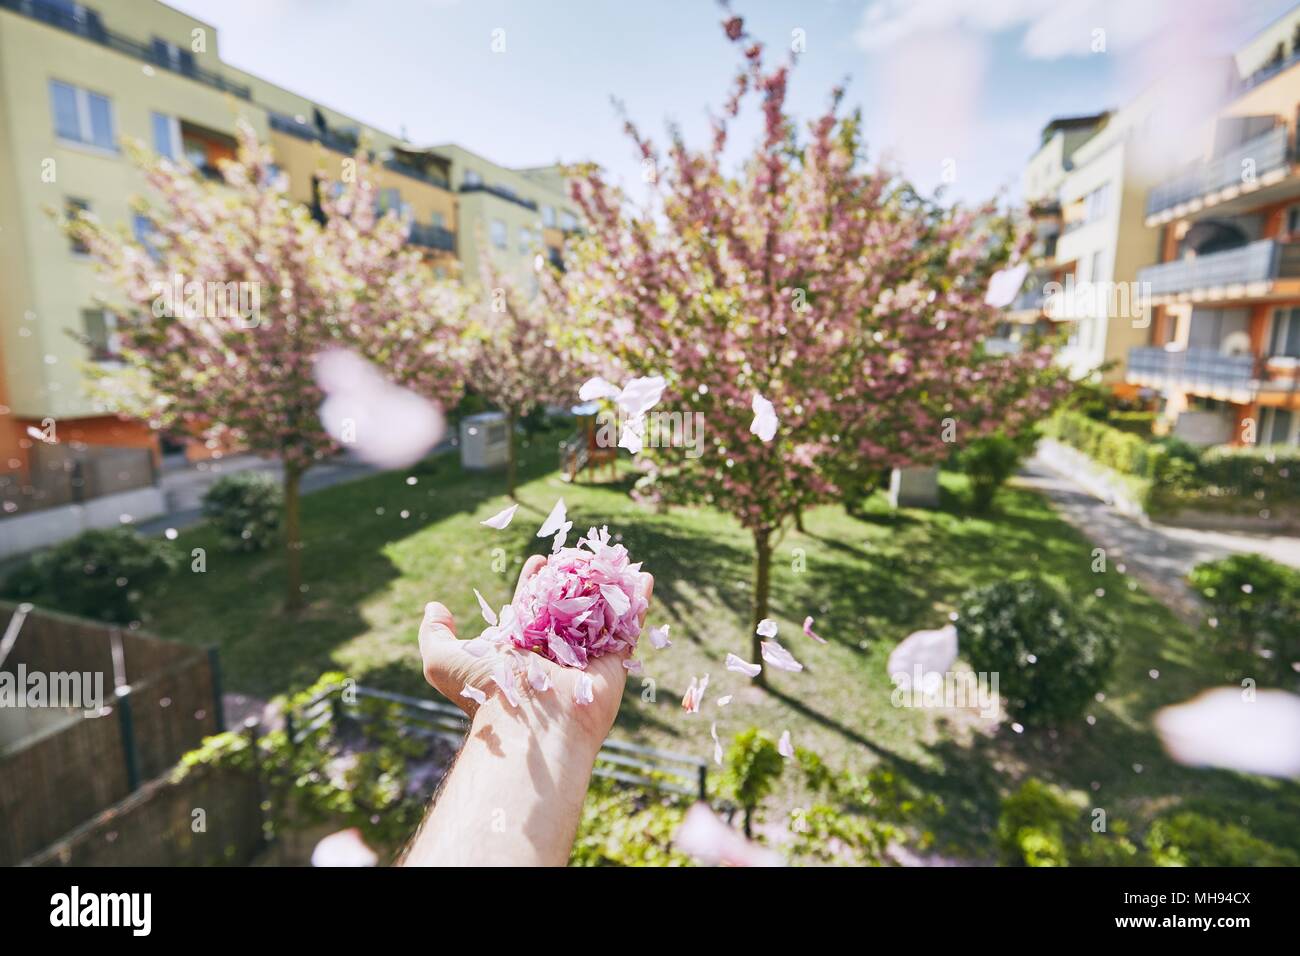 Ala petali di soffiatura da mano umana contro il giardino e il palazzo residenziale. Foto Stock